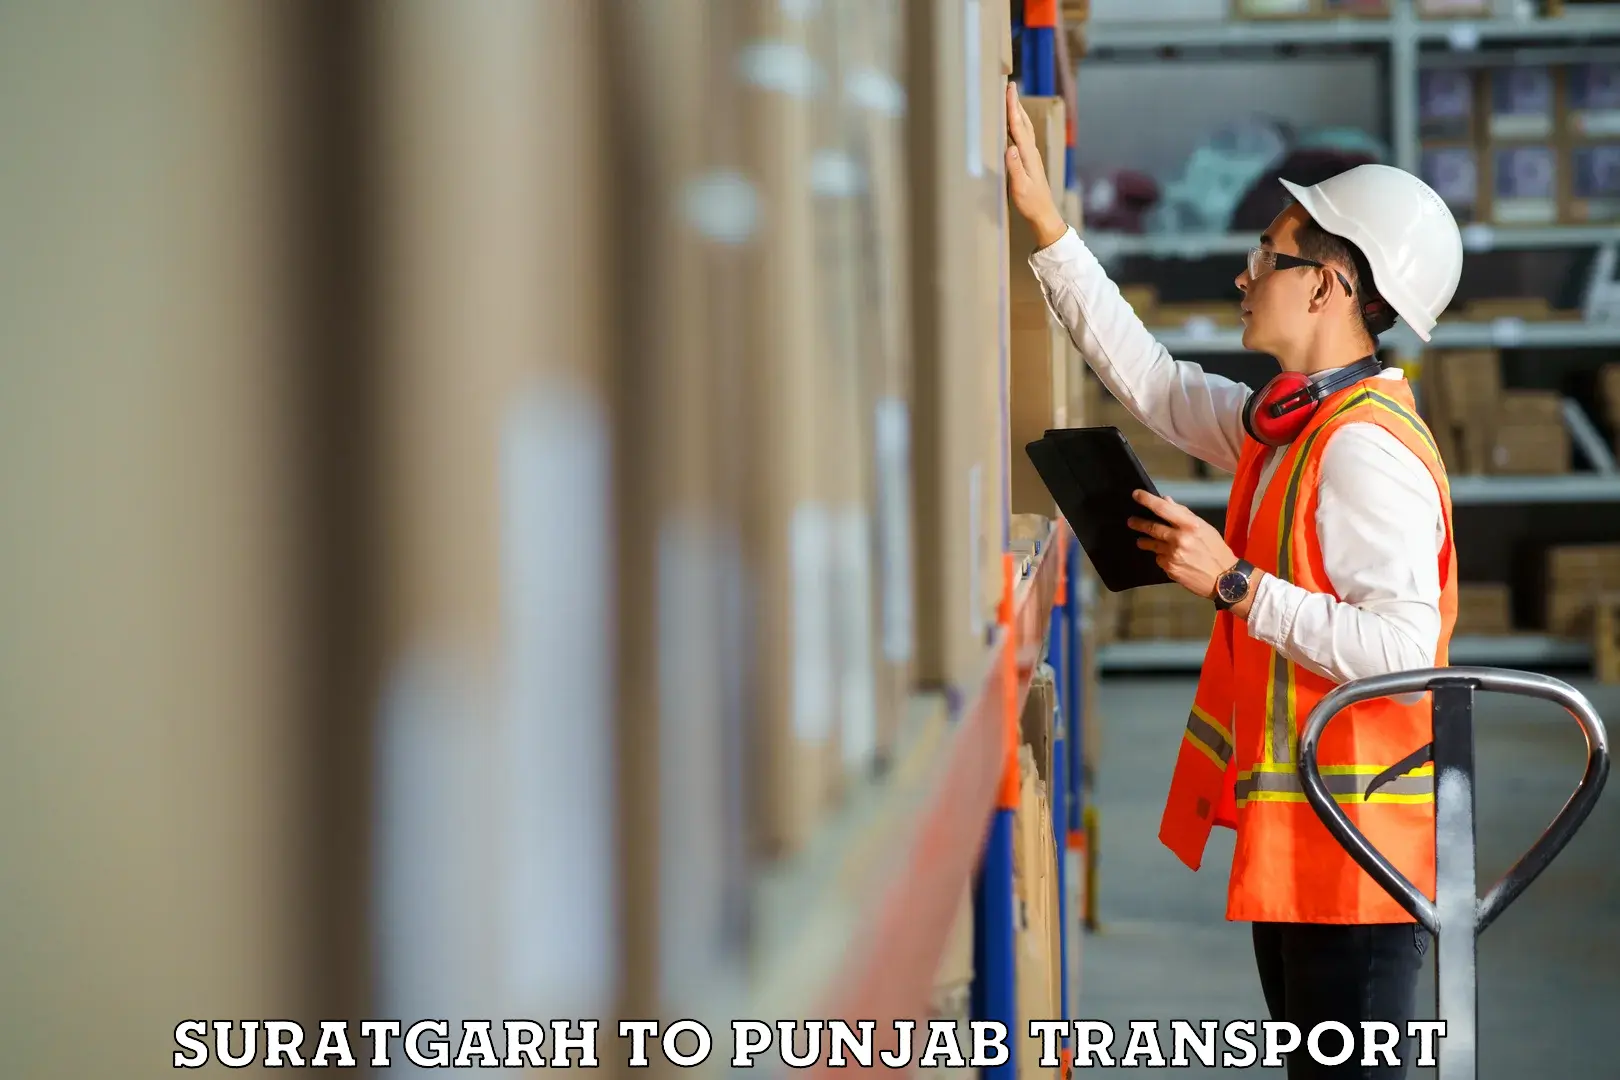 Container transport service Suratgarh to Ludhiana